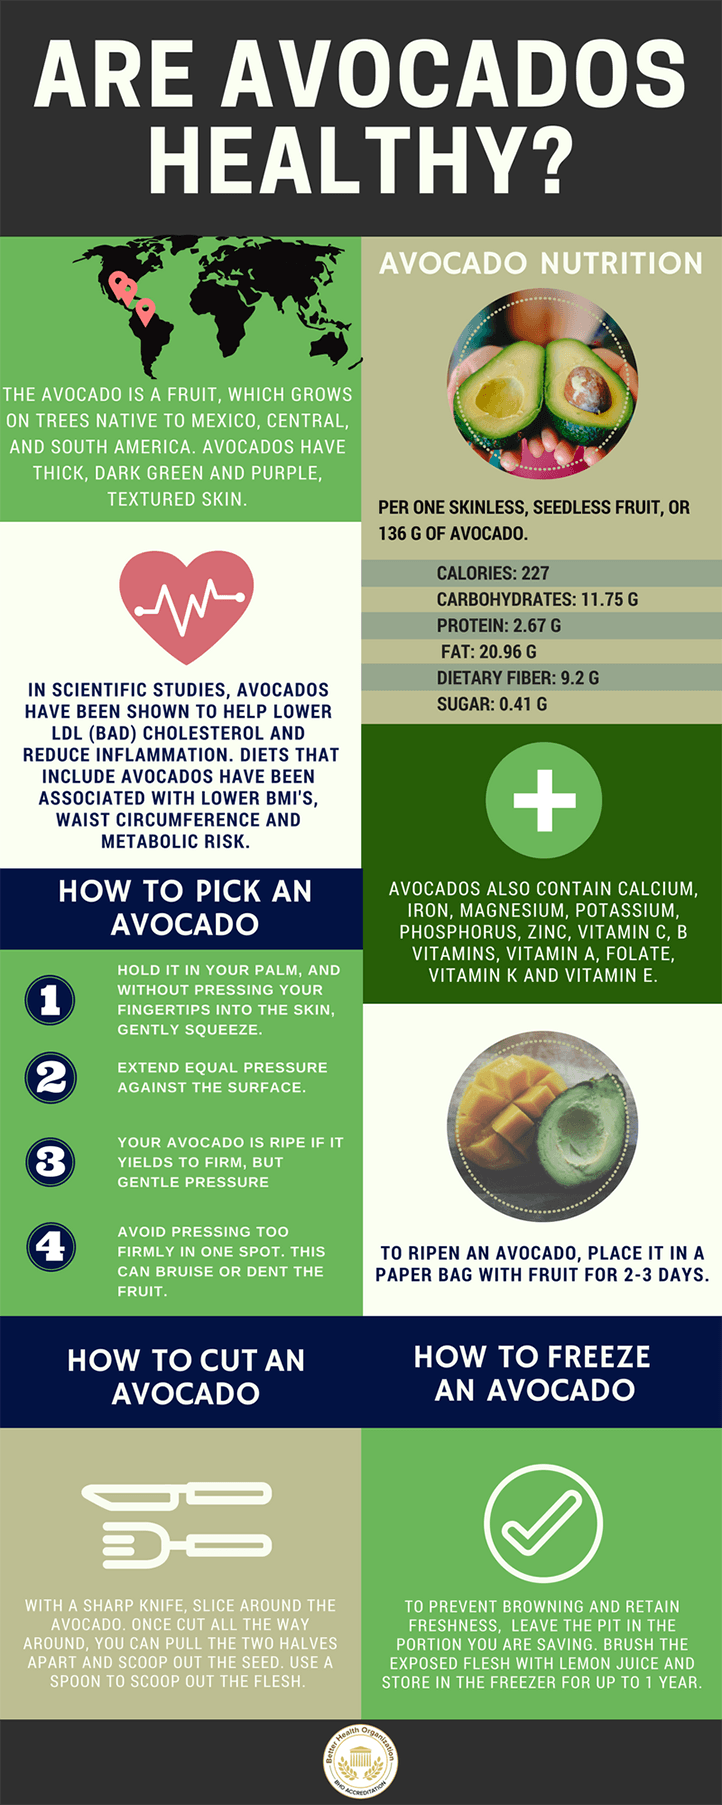 Are Avocados Healthy?